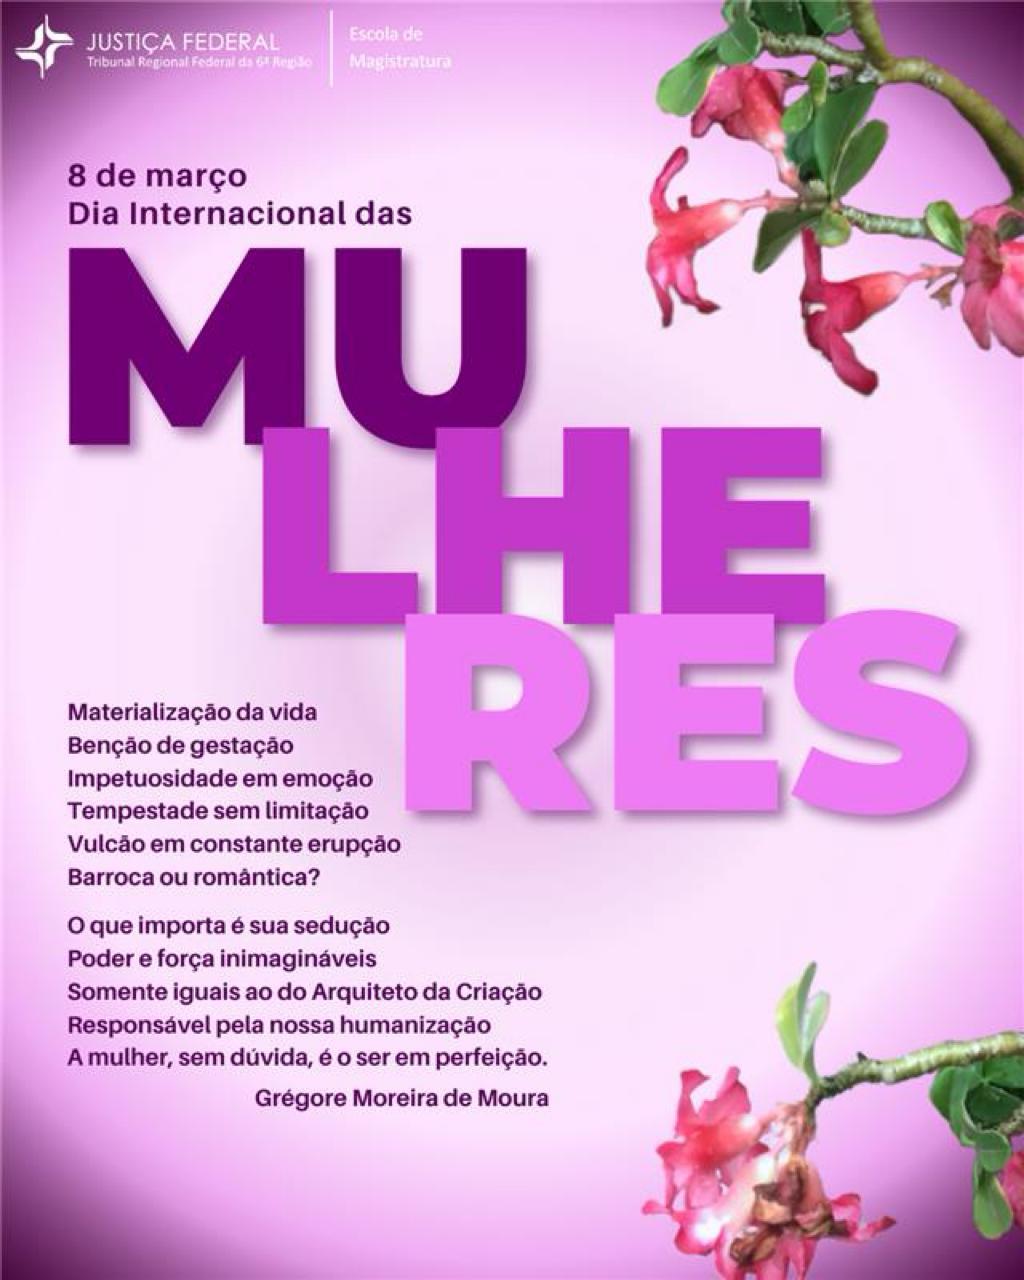 Imagem colorida retangular na cor fúcsia de comemoração ao Dia Internacional da Mulher. À esquerda, poema do desembargador federal Grégore Moreira de Moura.